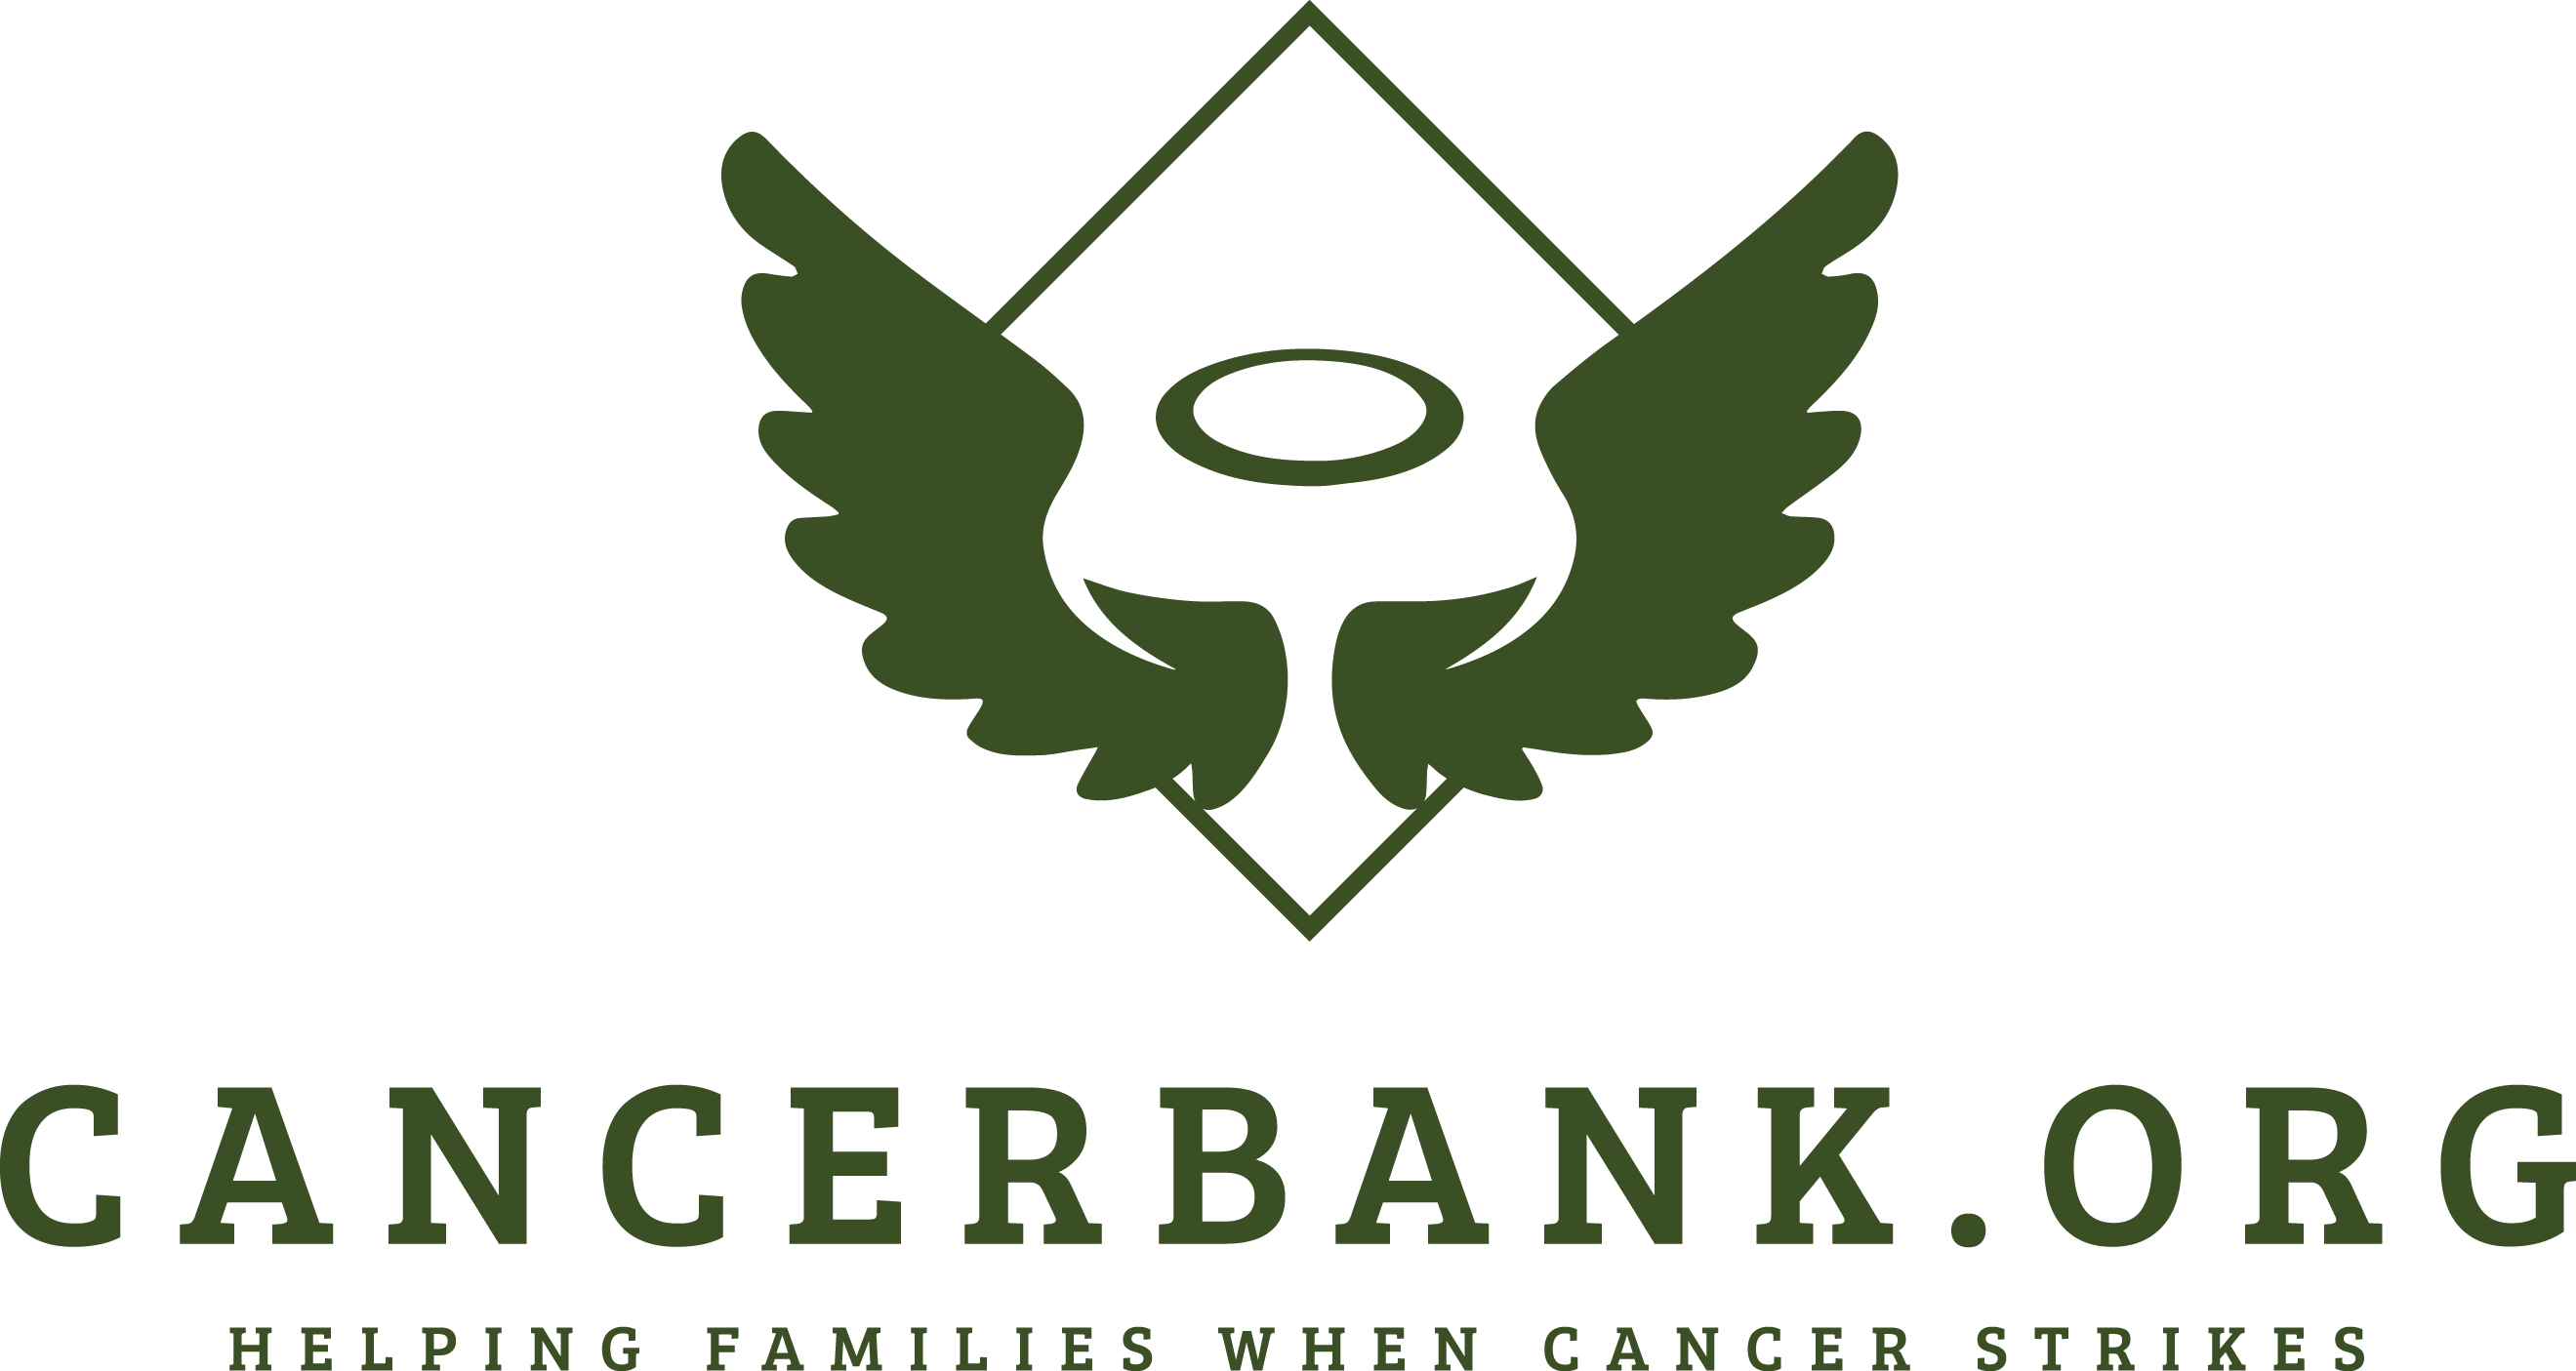 Cancerbank.org